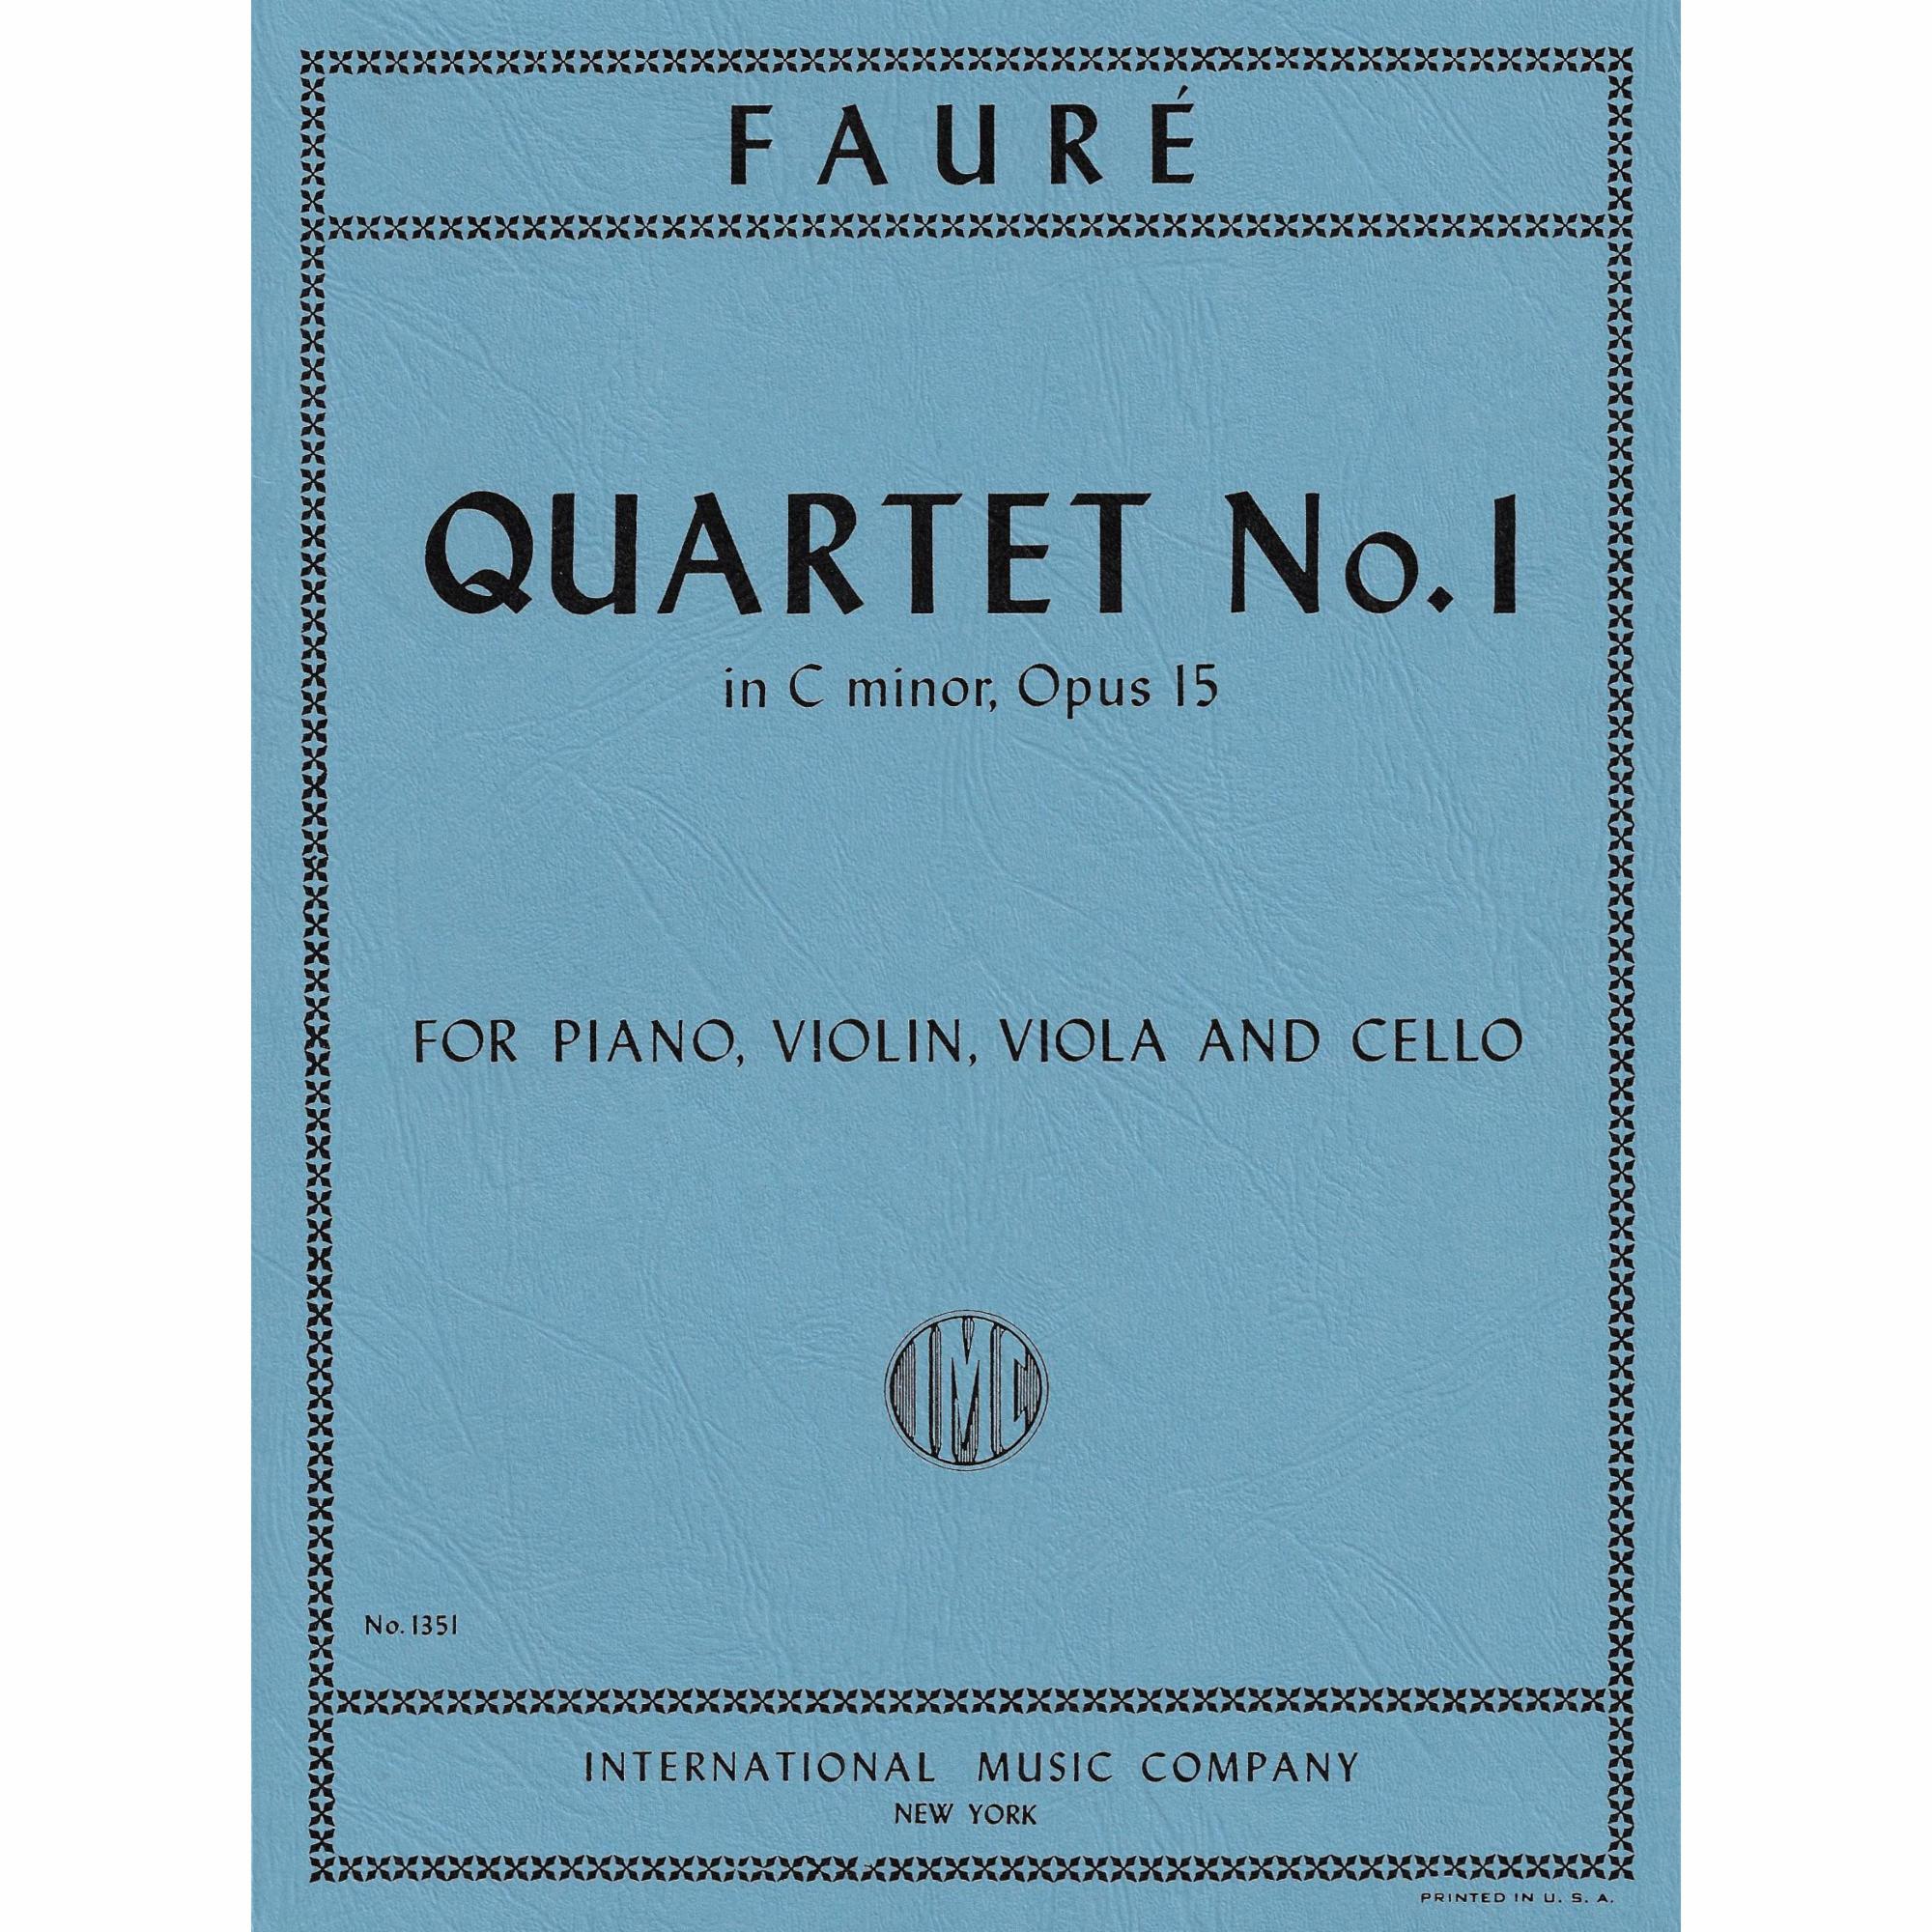 Faure -- Piano Quartet No. 1 in C Minor, Op. 15